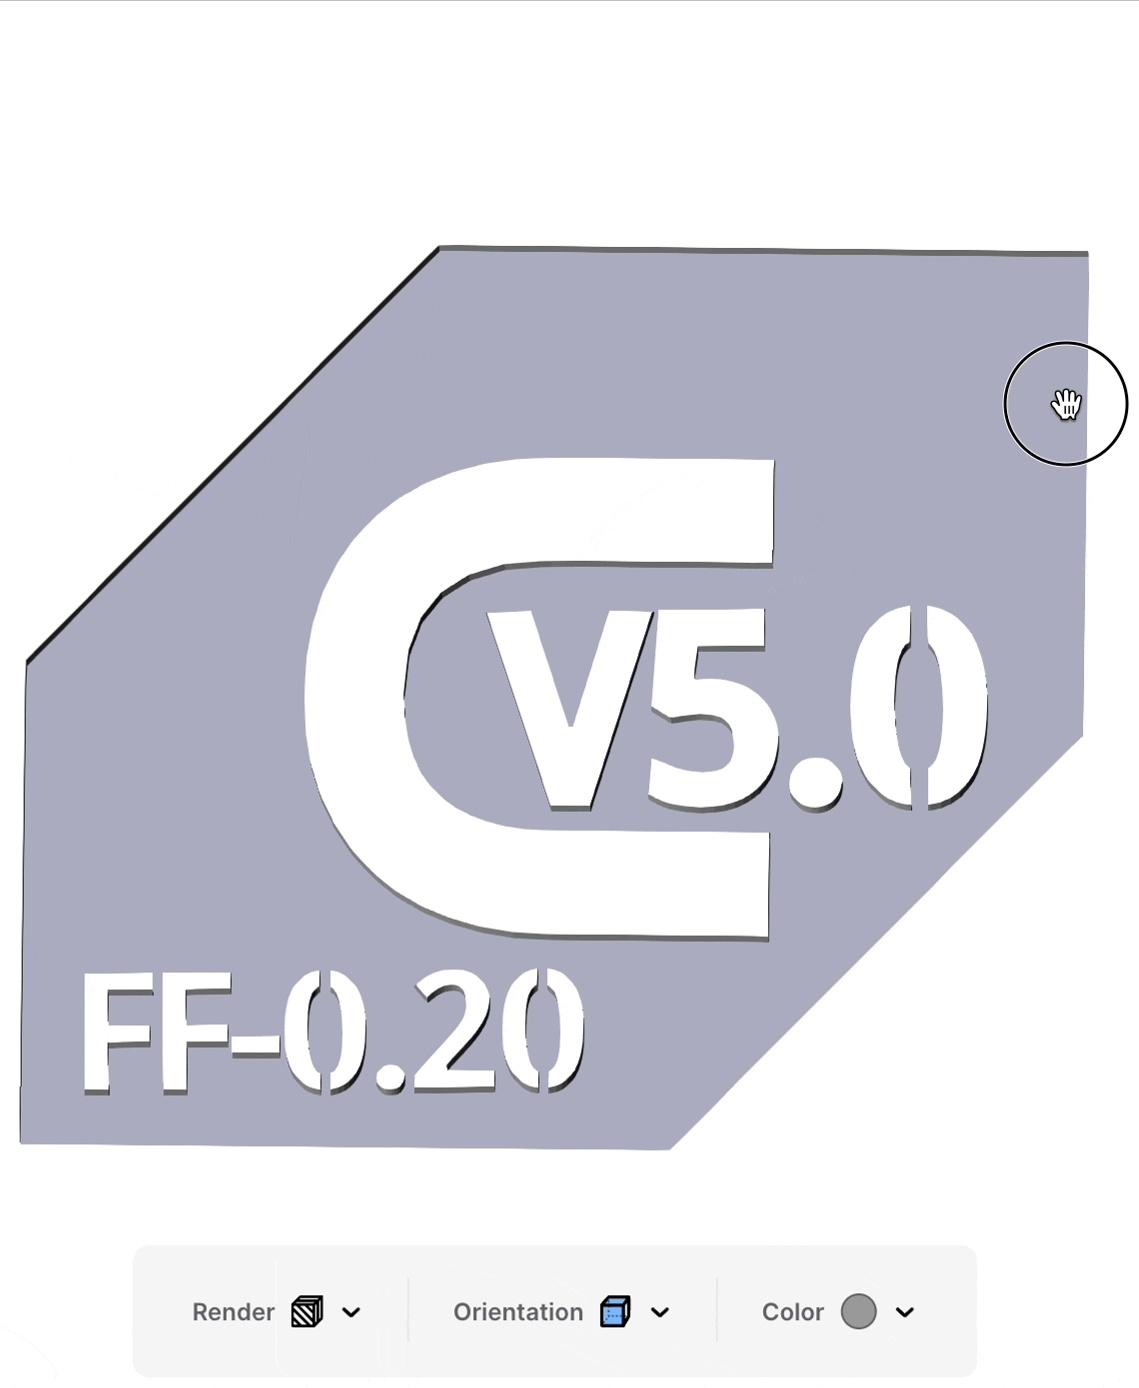 Ver4.0 Cura V5.0 Filament Friday Good (0.20) Profile - Hi Team Discord! - 3d model